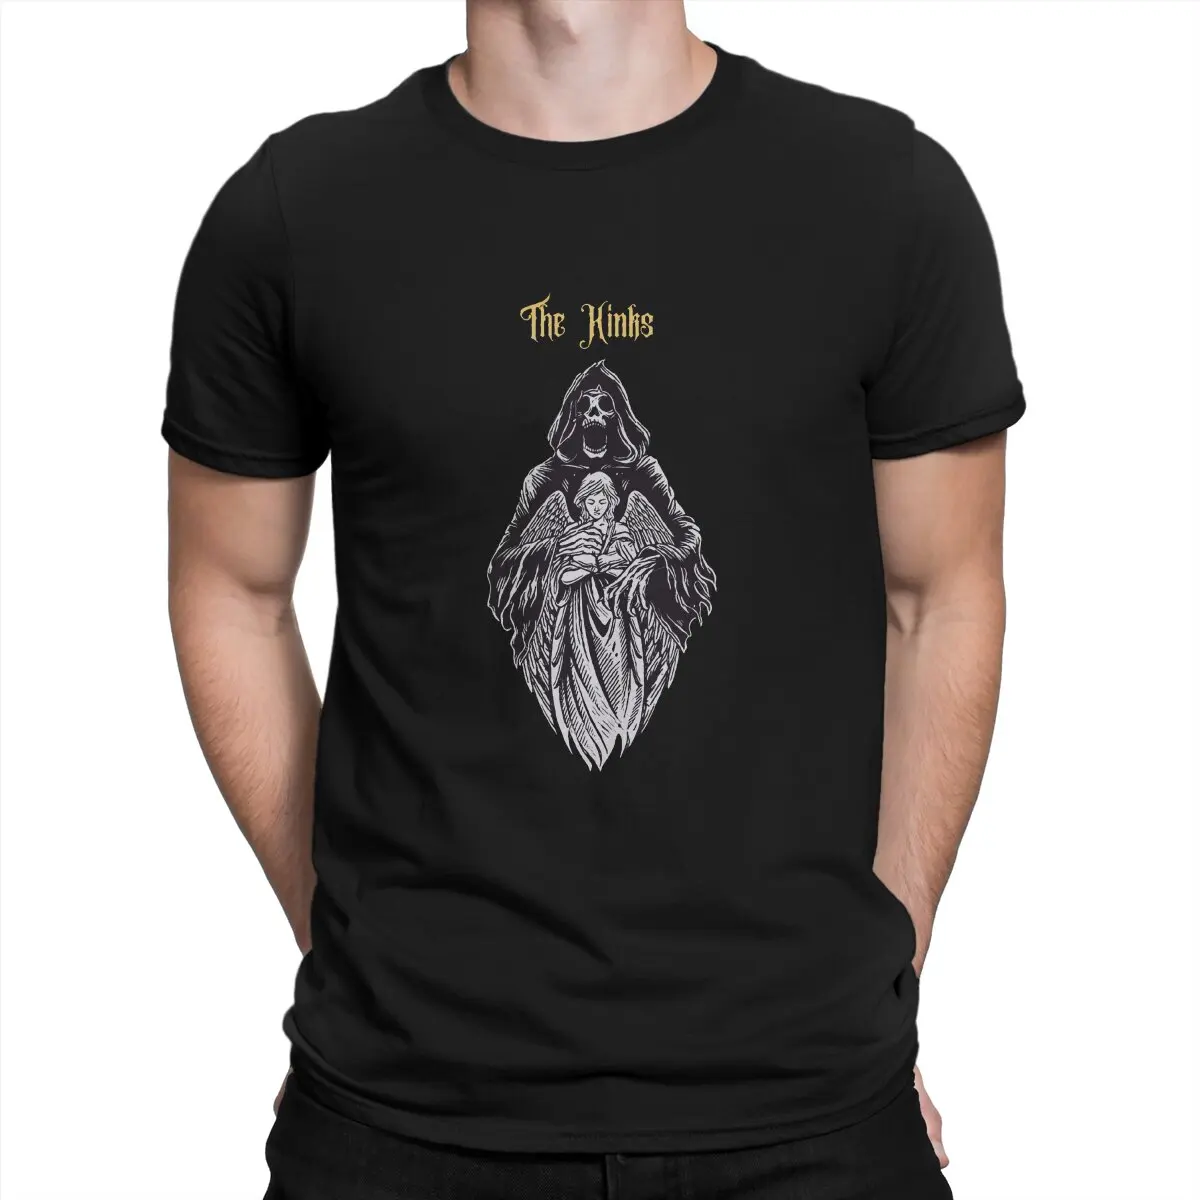 

Футболка Kinks Мужская, оригинальная рубашка с ангелом дьявола, хипстерская уличная одежда в стиле Харадзюку